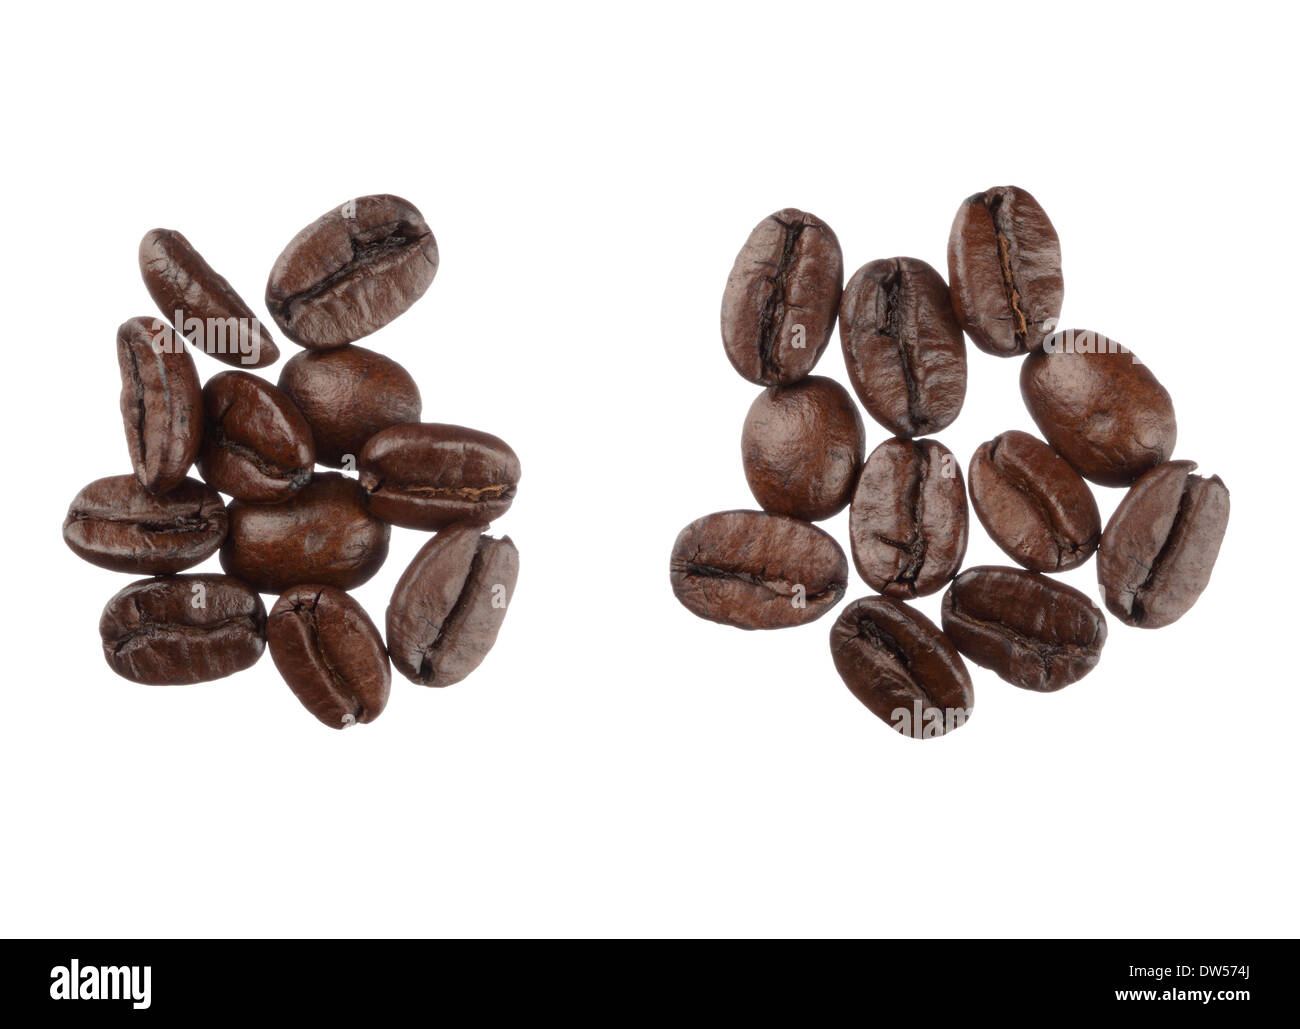 Les grains de café isolé sur fond blanc close up Banque D'Images